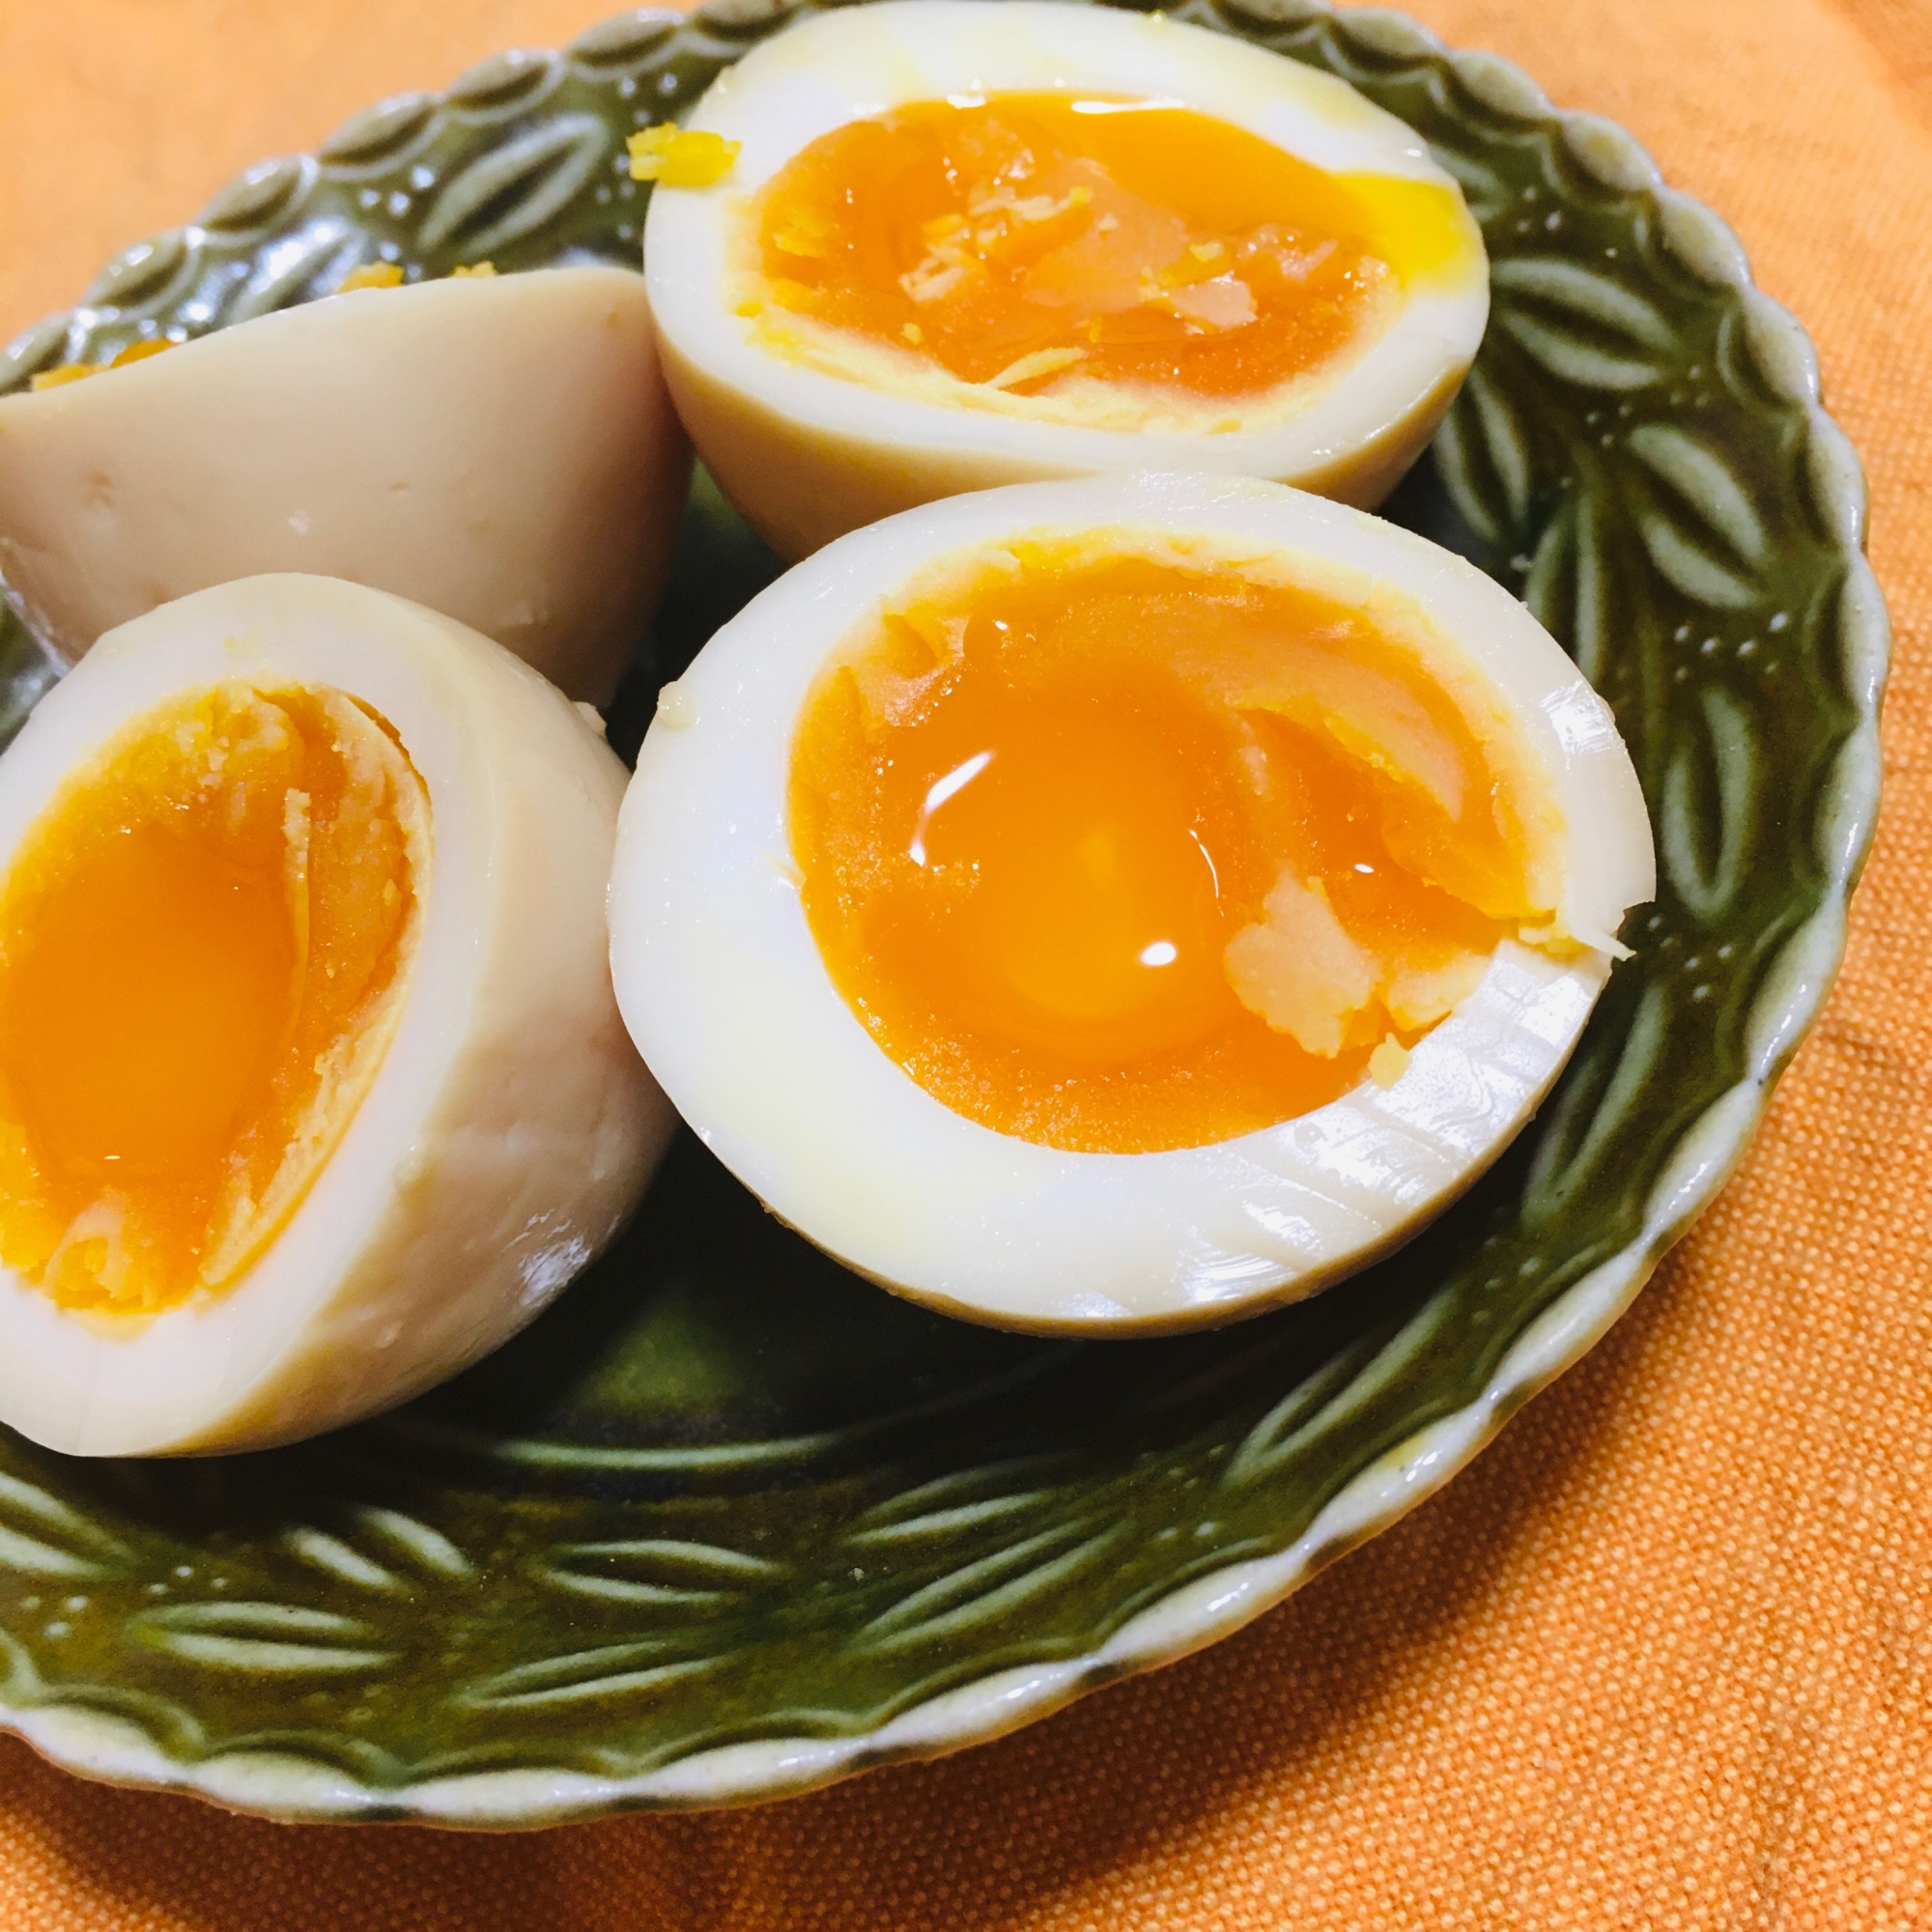 発酵ゆで卵 半熟卵の醤油麹漬け レシピ 作り方 By Himamama 0401 楽天レシピ